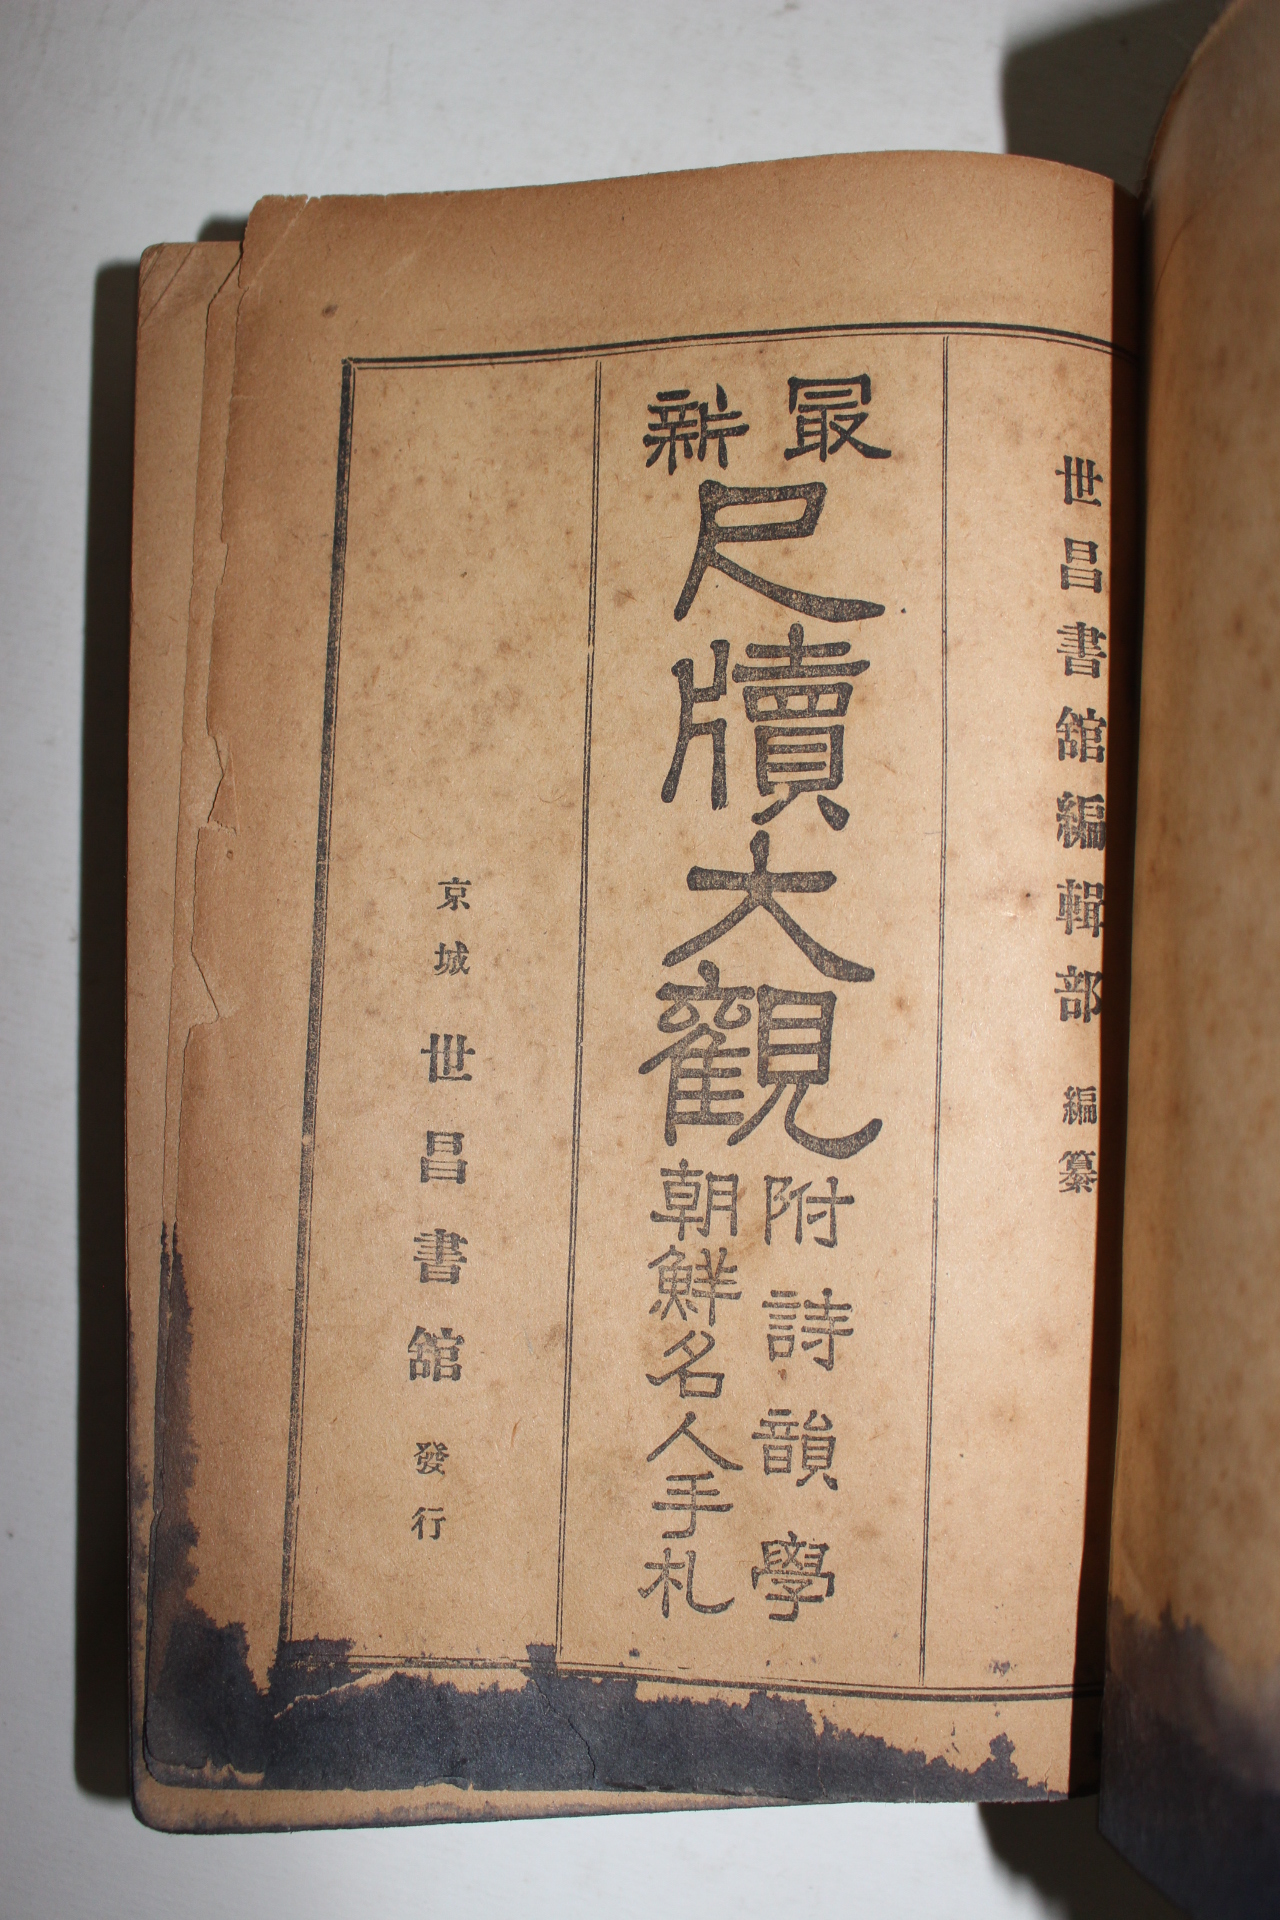 1923년(대정12년) 경성세창서관 최신 척독대관(尺牘大觀) 1책완질